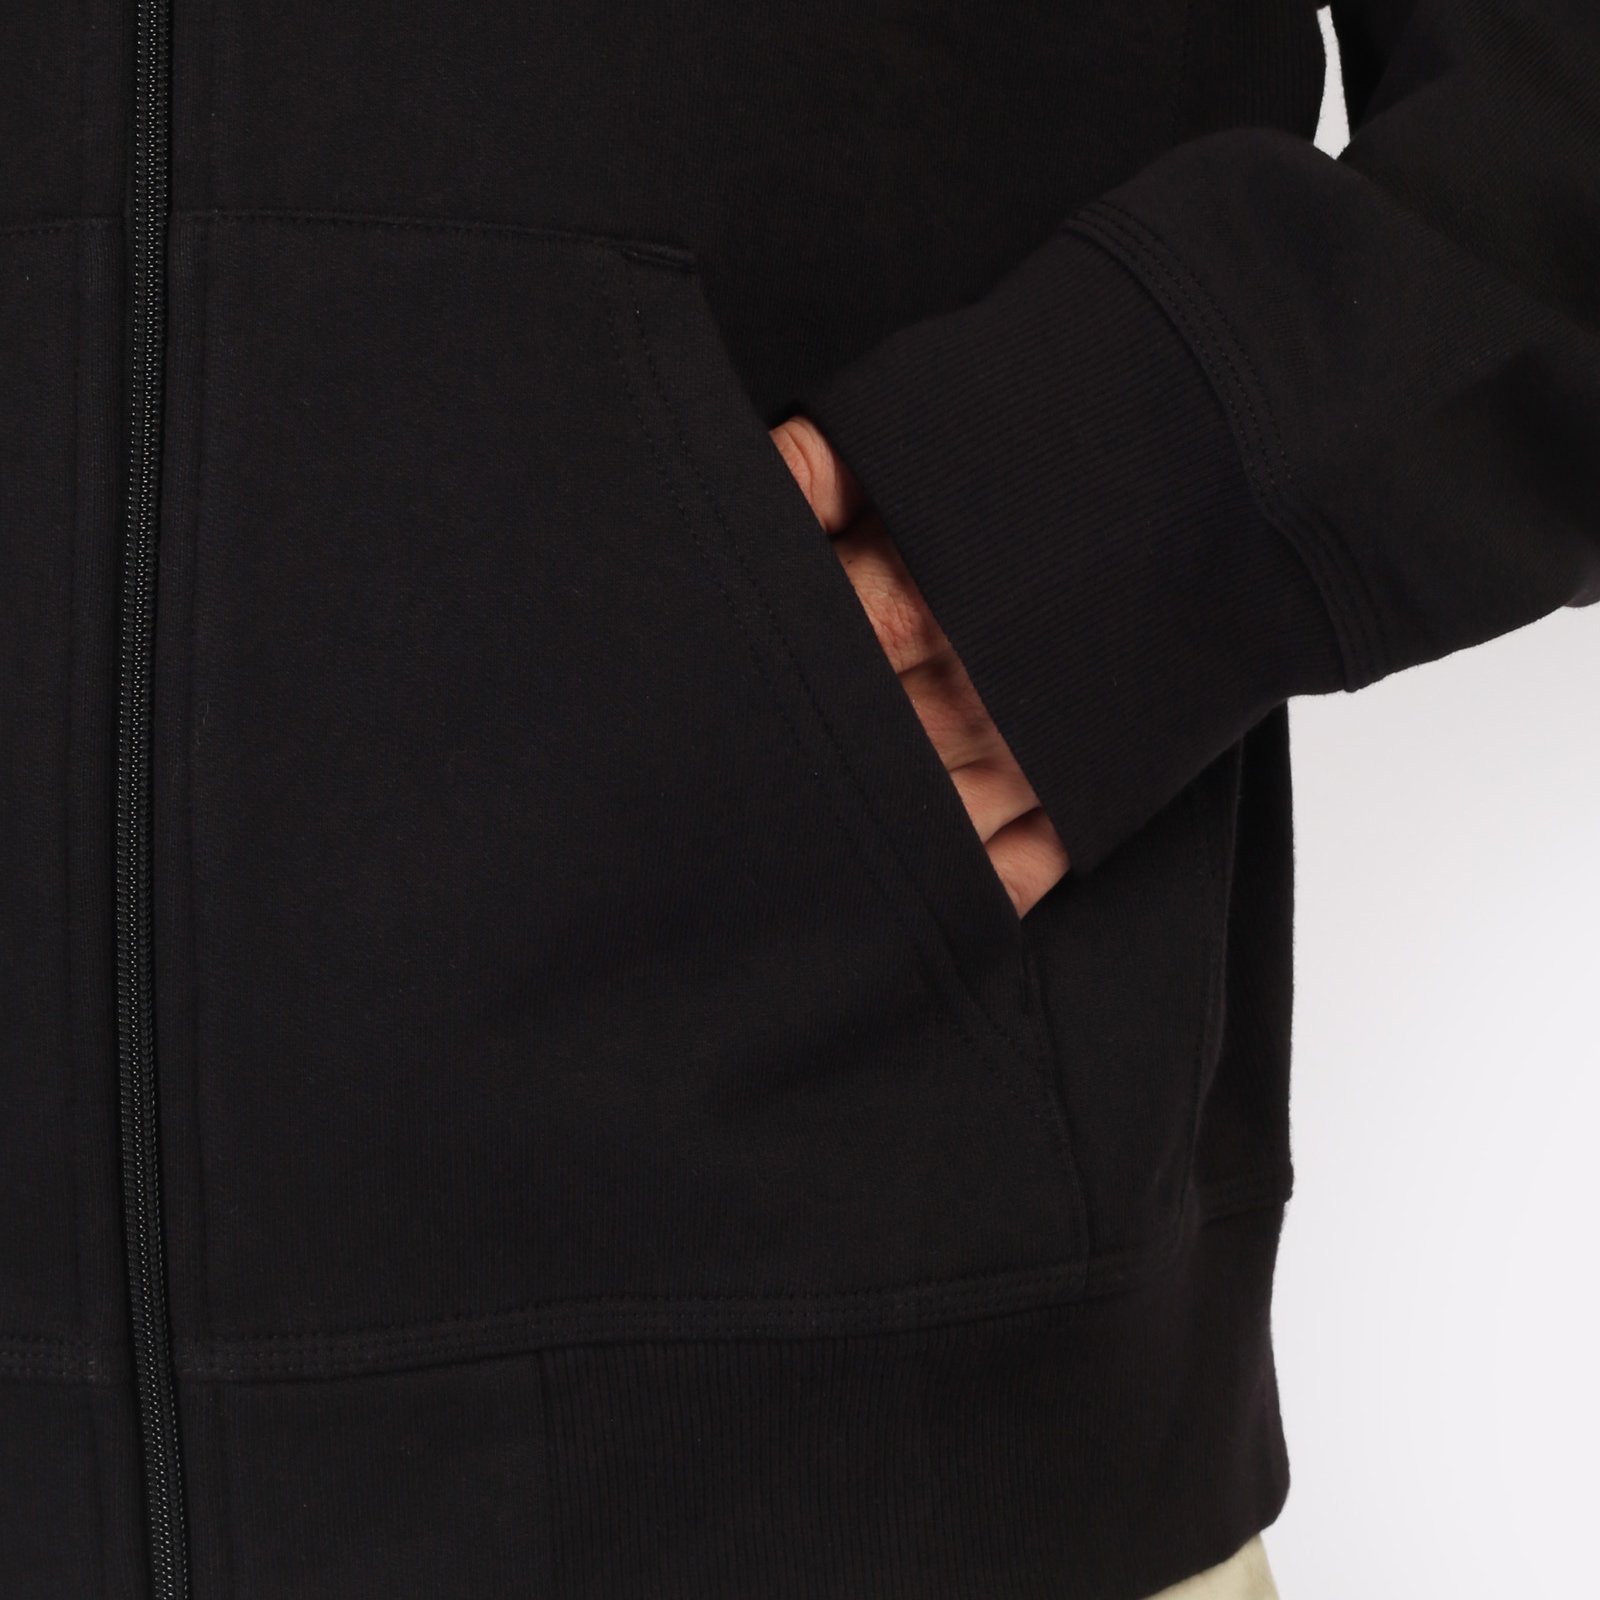 мужская толстовка Carhartt WIP Hooded American Script Jacket  (I033063-black)  - цена, описание, фото 6